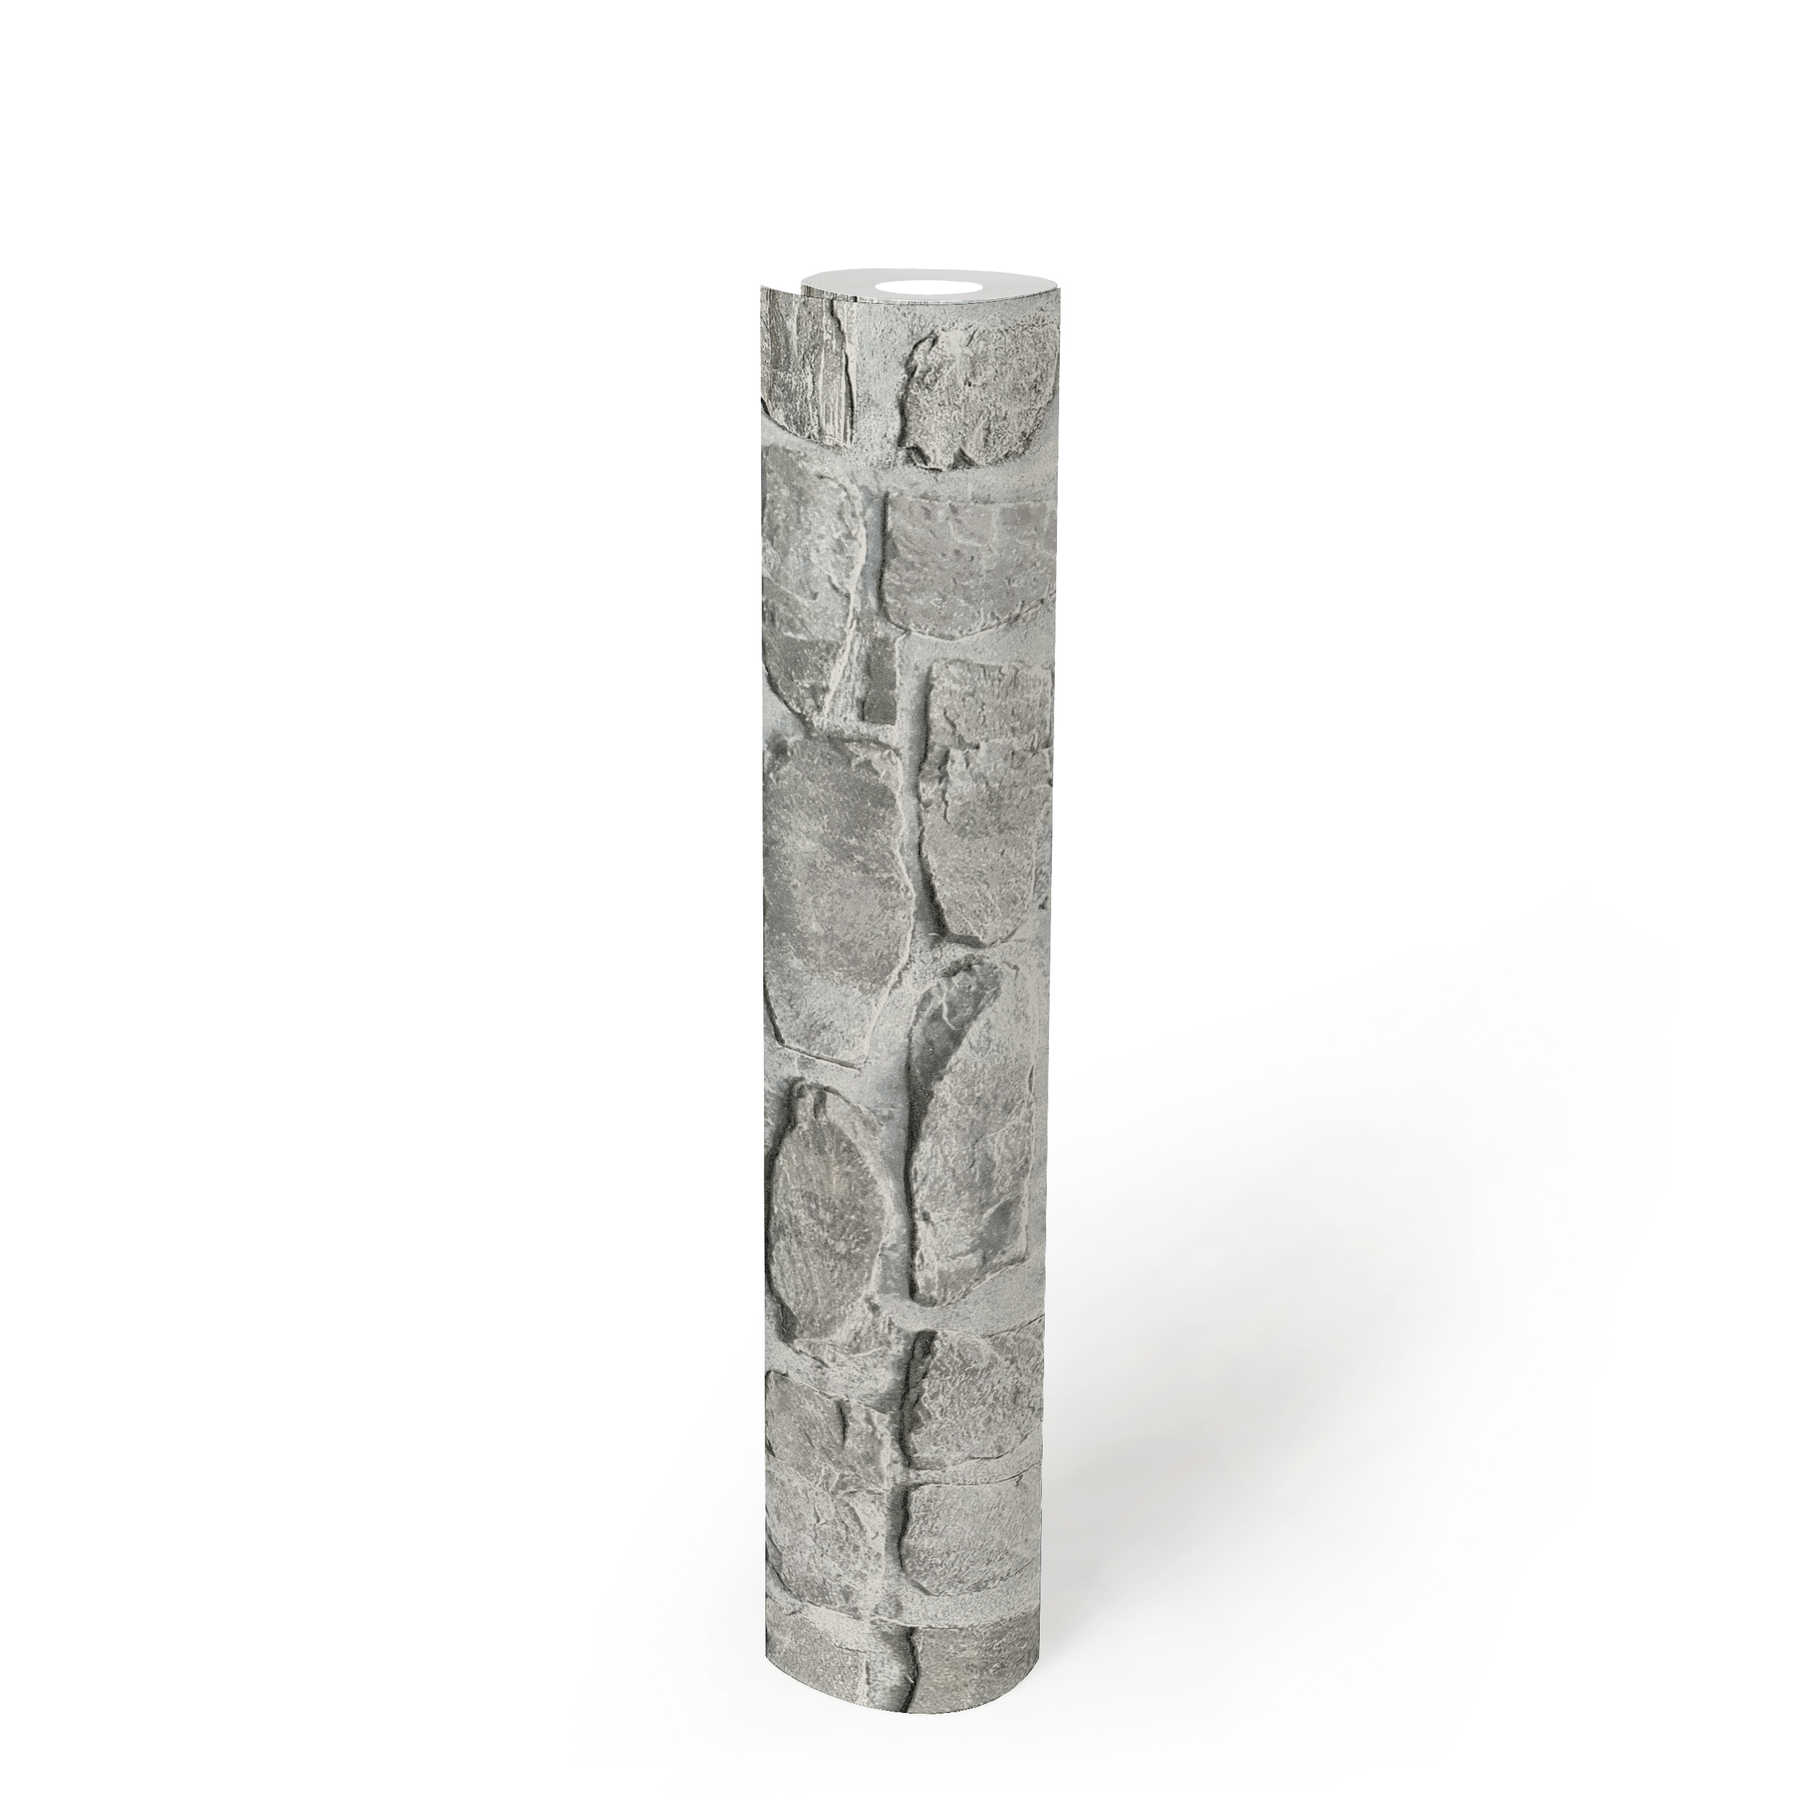             Steenvliesbehang met natuursteenmotief - grijs, beige
        